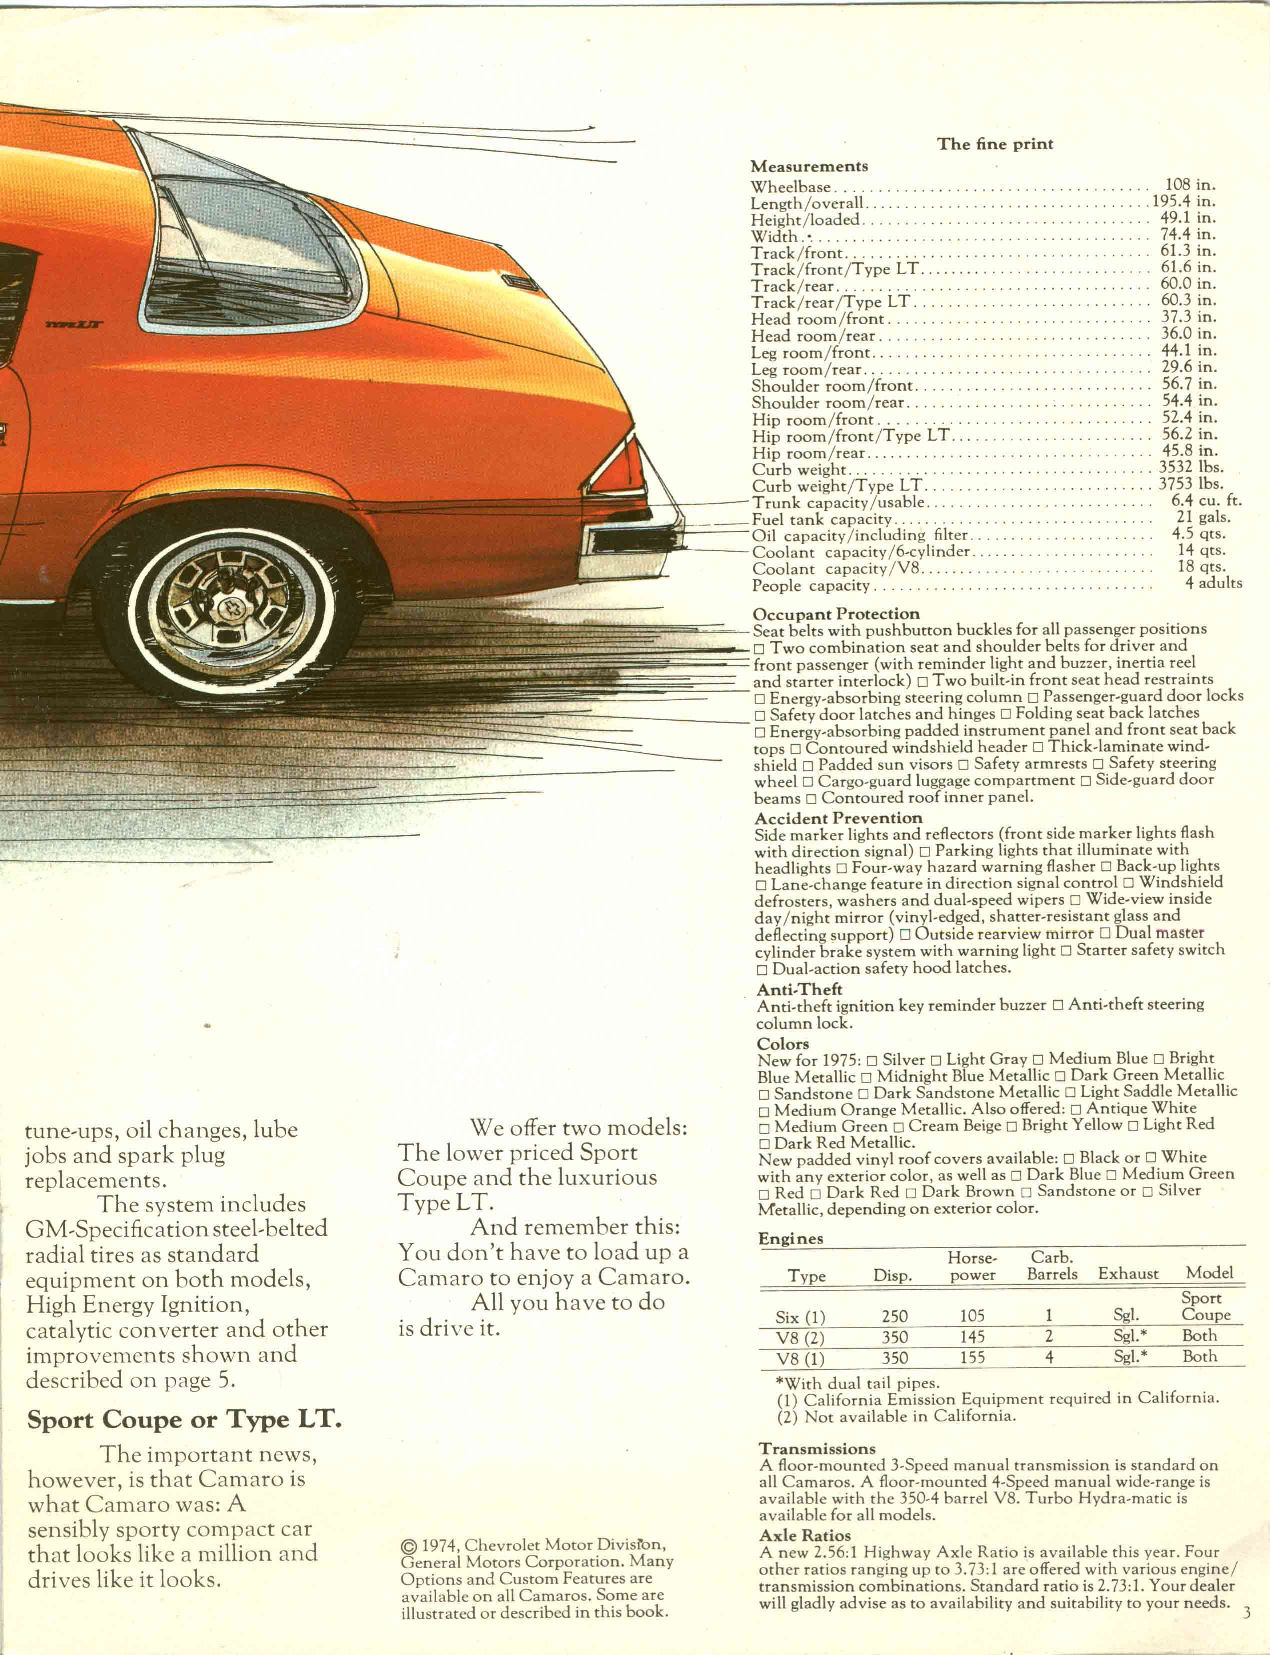 1975 Chev Camaro Brochure Page 7